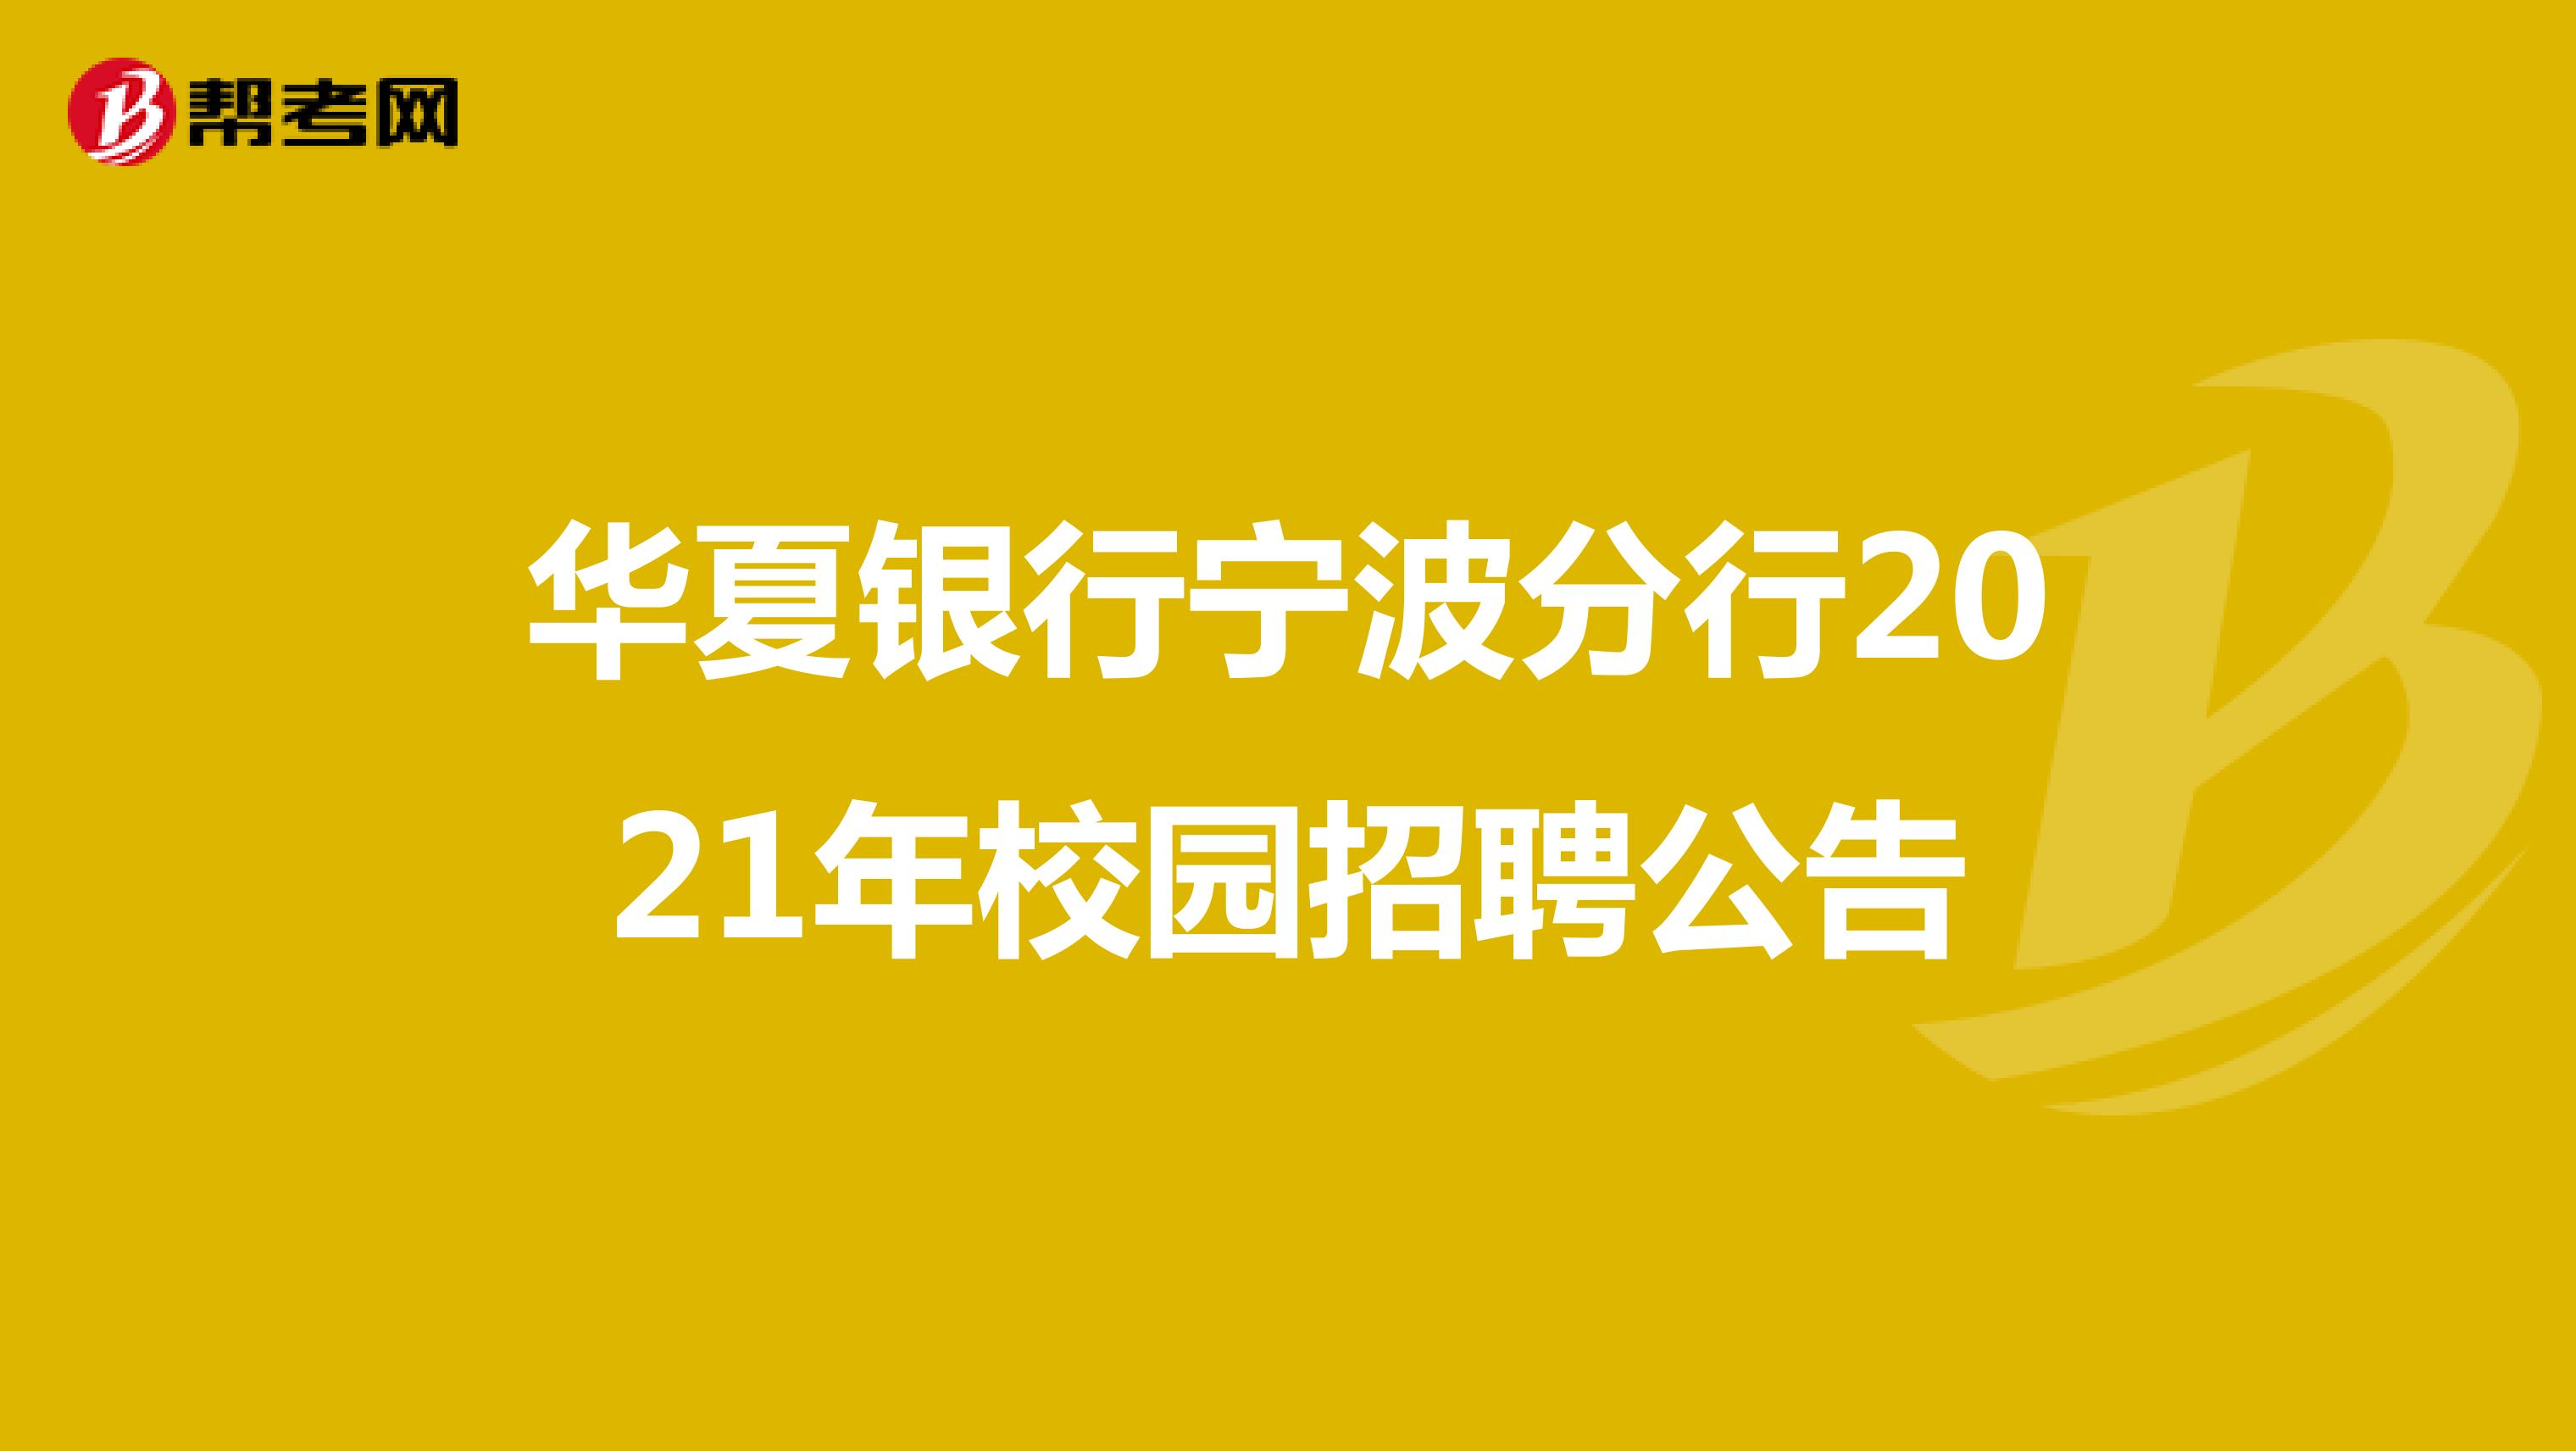 华夏银行宁波分行2021年校园招聘公告